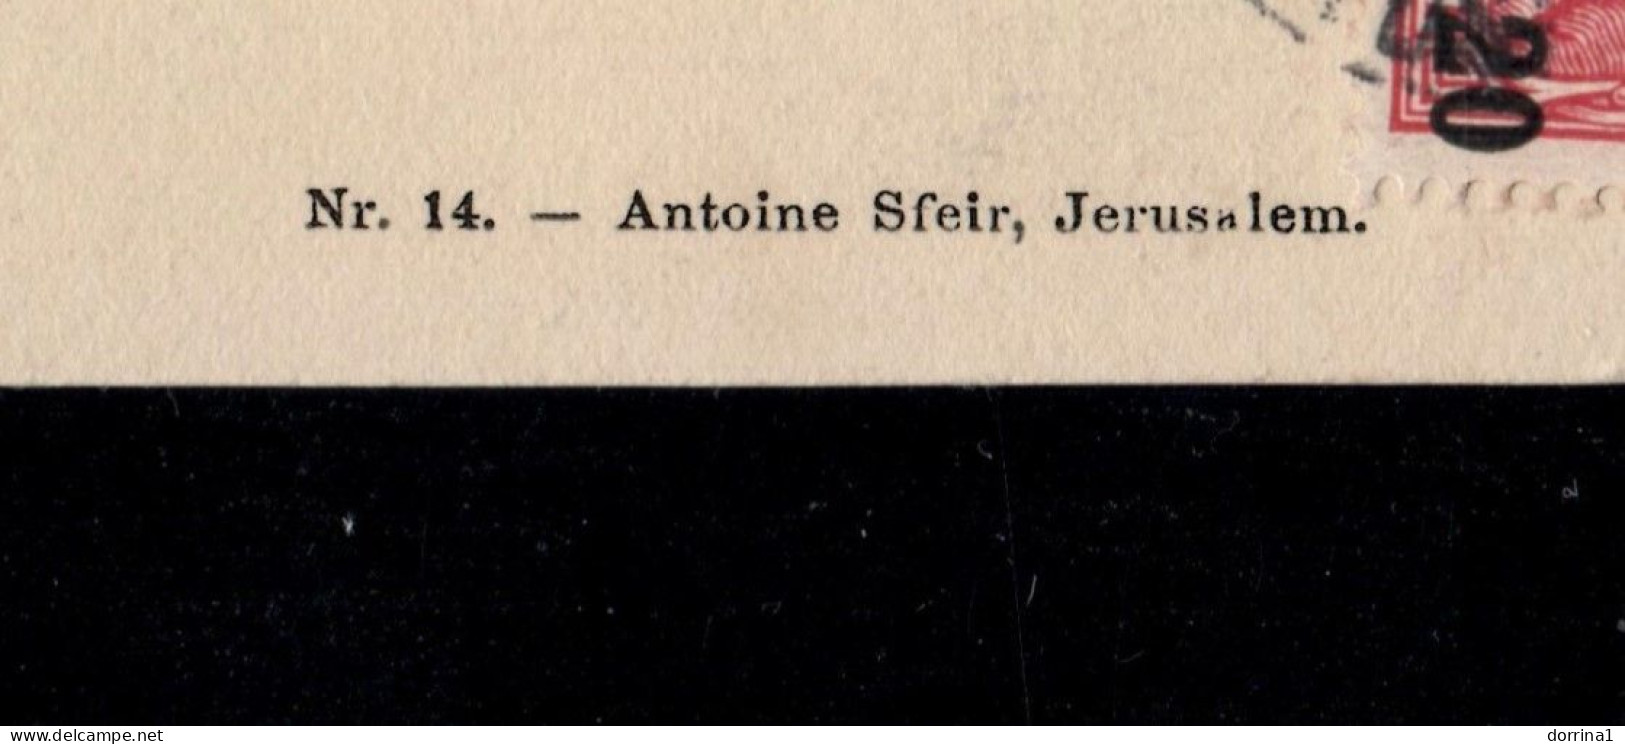 Jerusalem 1905 Germany Levant Post In Palestine Postcard - Antoine Sfeir No. 14 - Israel